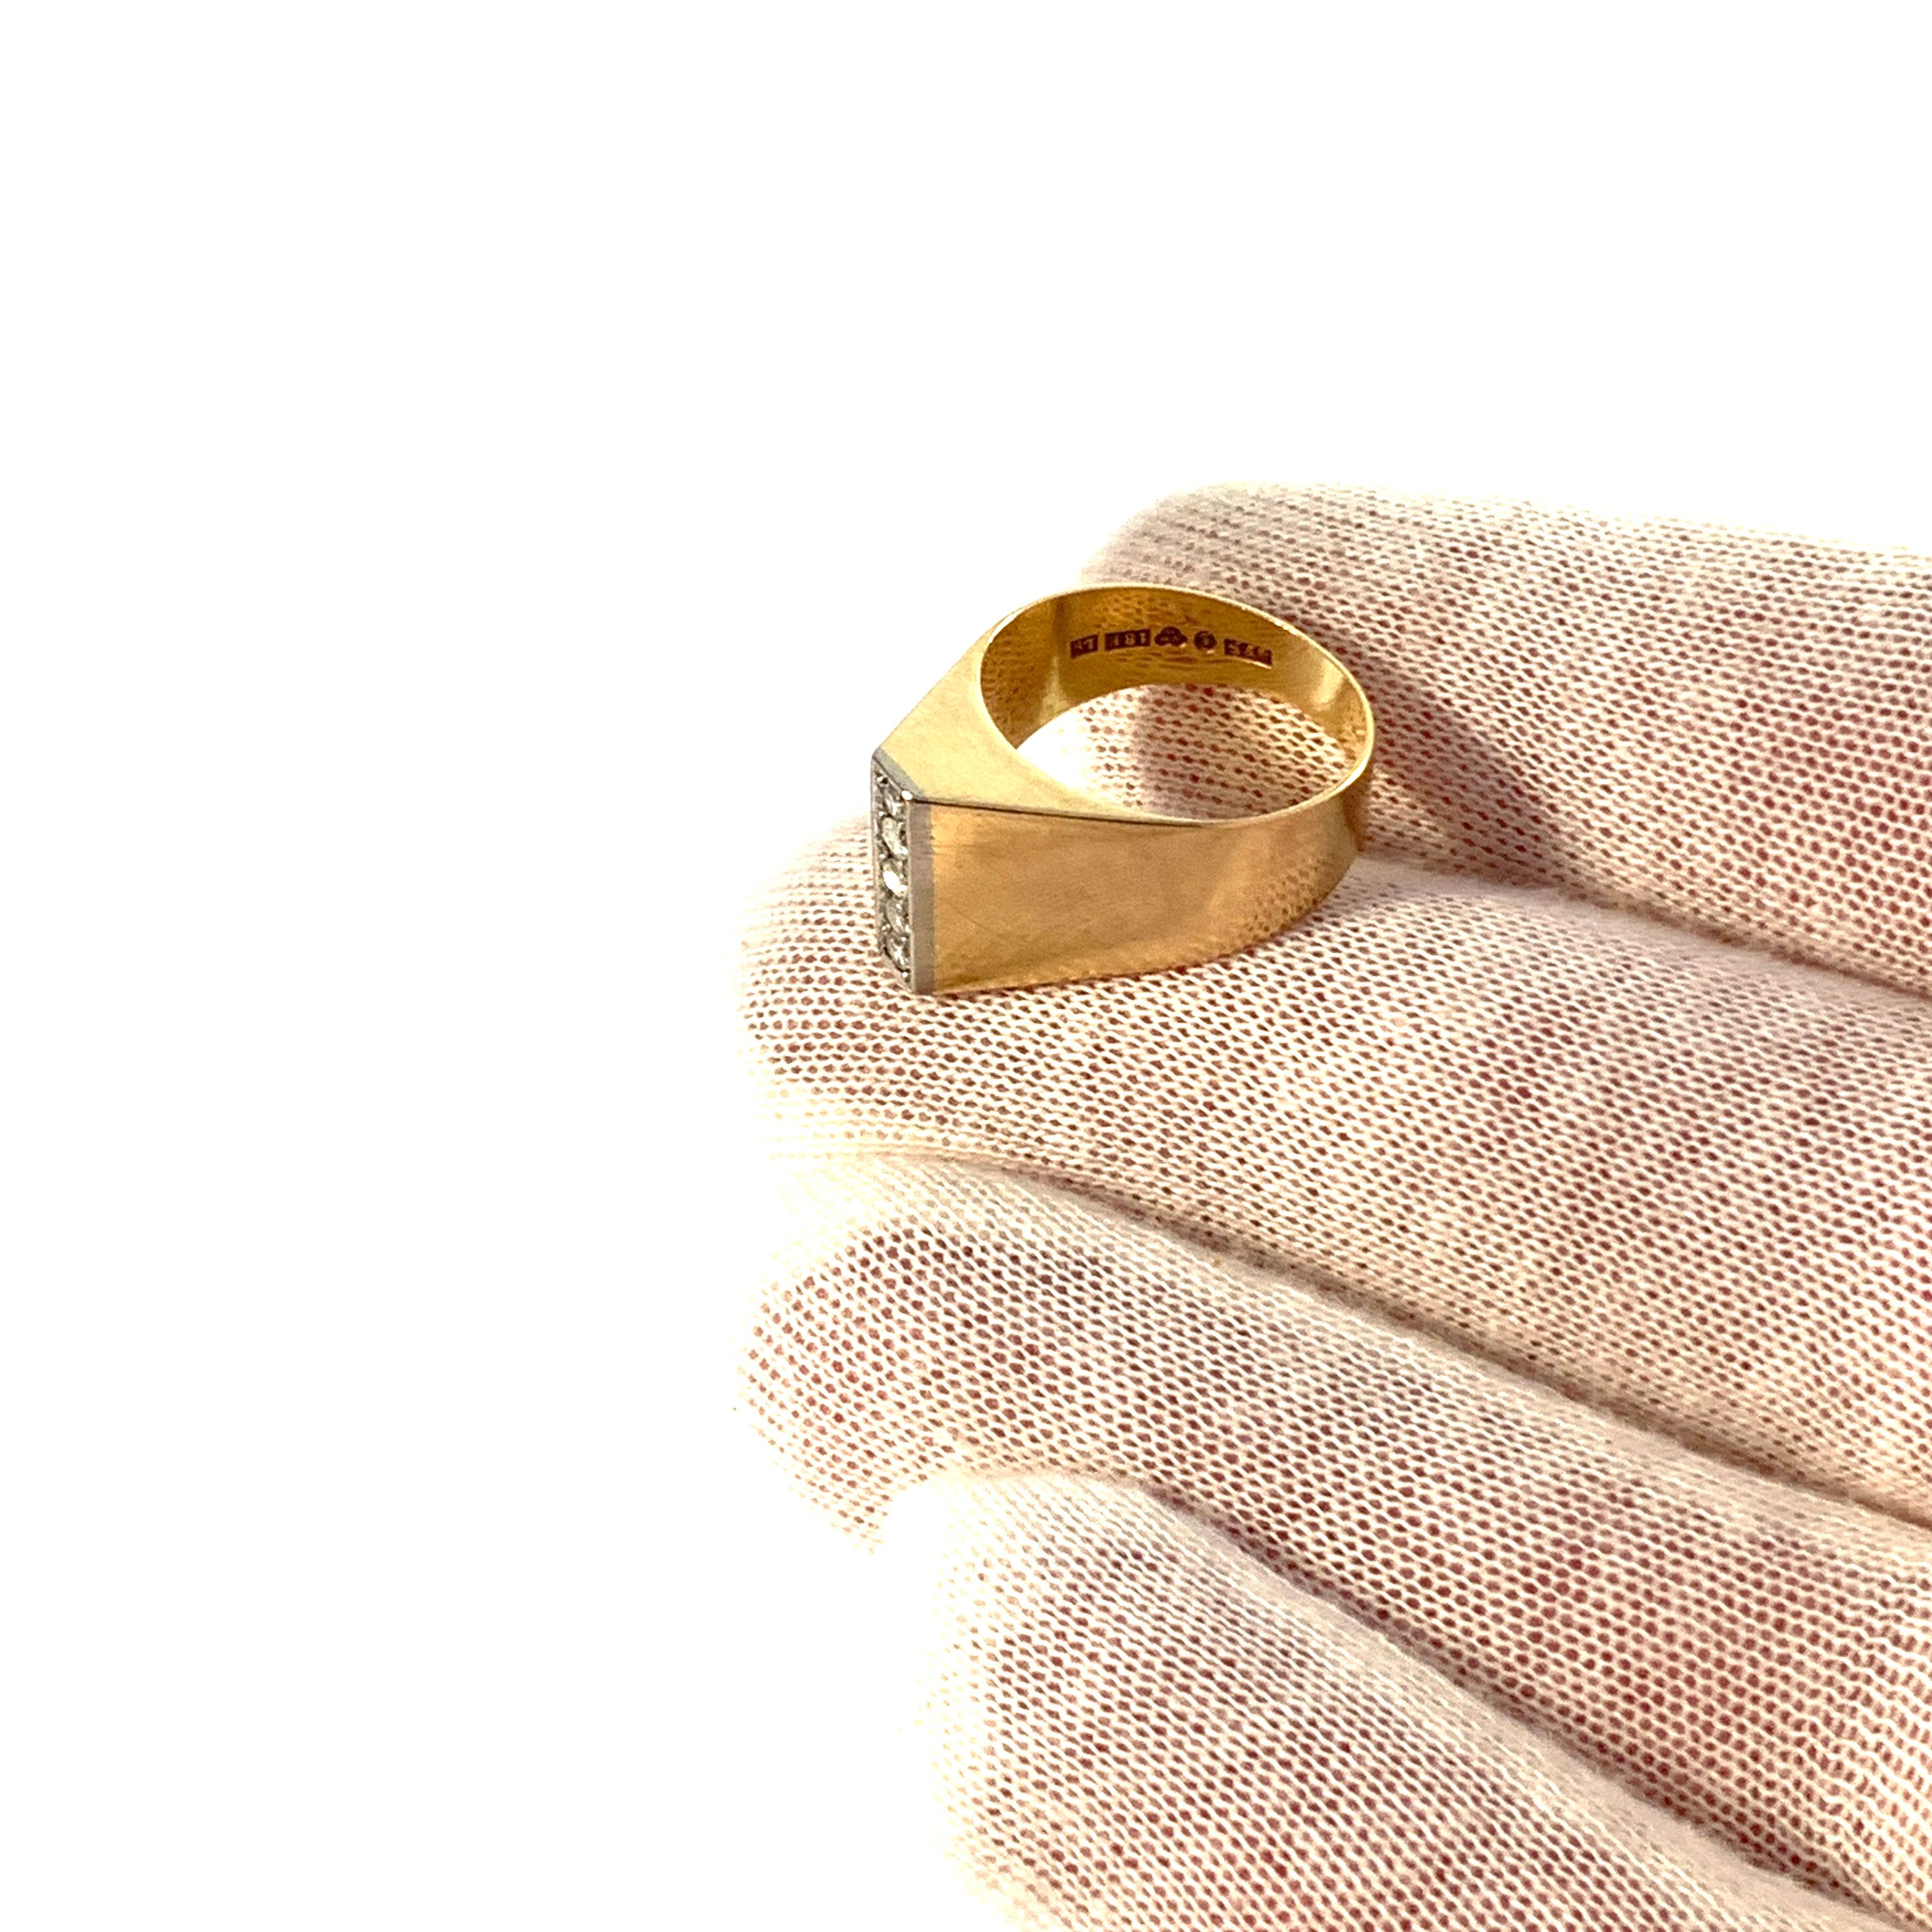 Fryklund & Pålsson, Sweden year 1961. Vintage 18k Gold Diamond Ring.